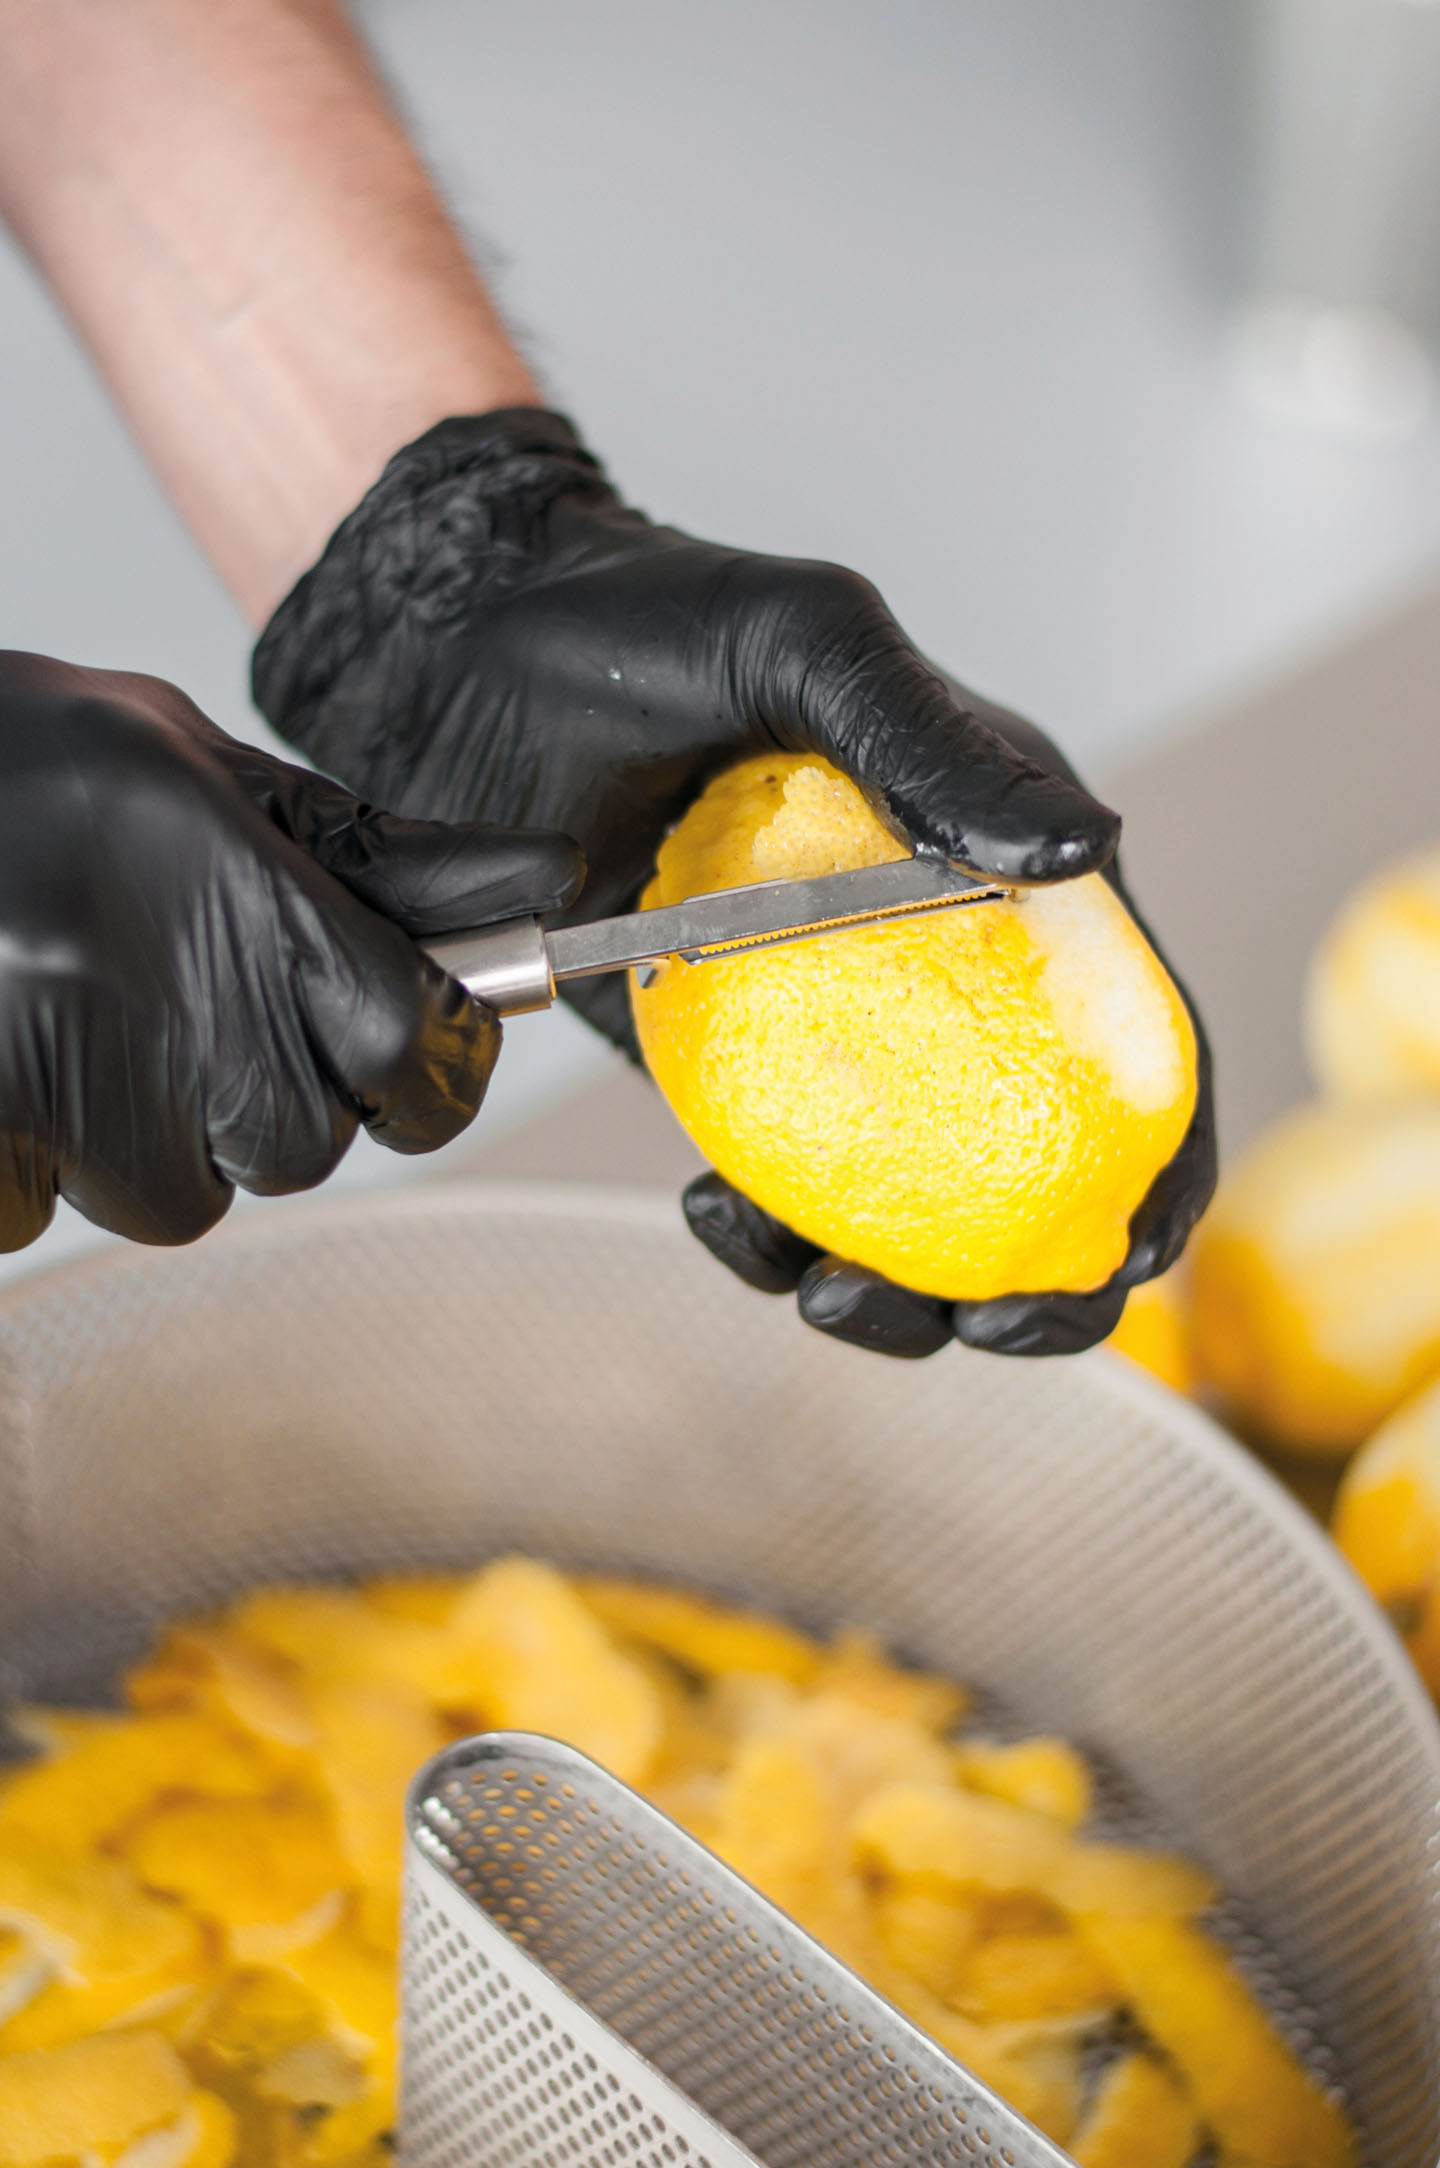 Frische Zitronen werden von Hand geschält, so dass nur die feinen Zesten, die die aromatischen ätherischen Öle enthalten, in den Geistkorb gelangen.